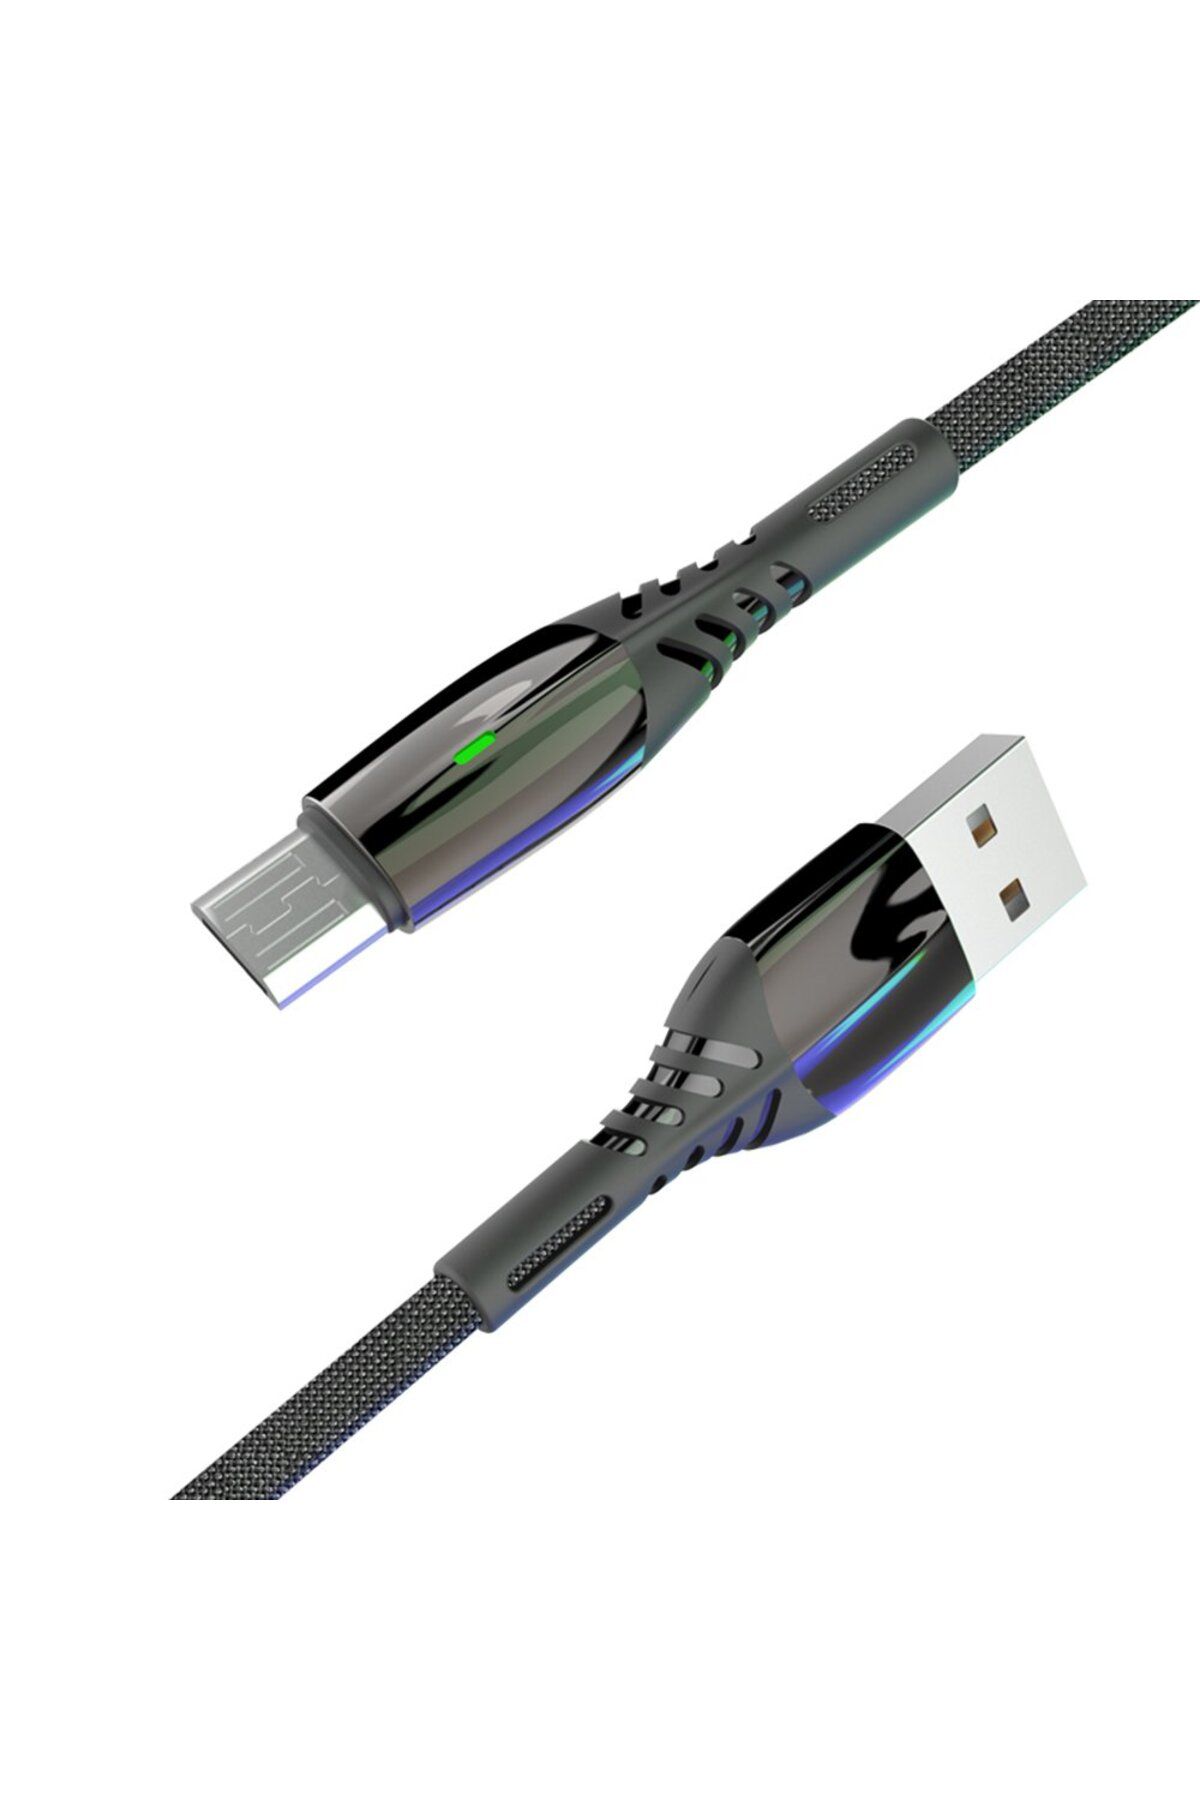 ÇERÇİCİ MOBİL S91 Ledli Micro Usb Kablo 1m 2.4a - Siyah